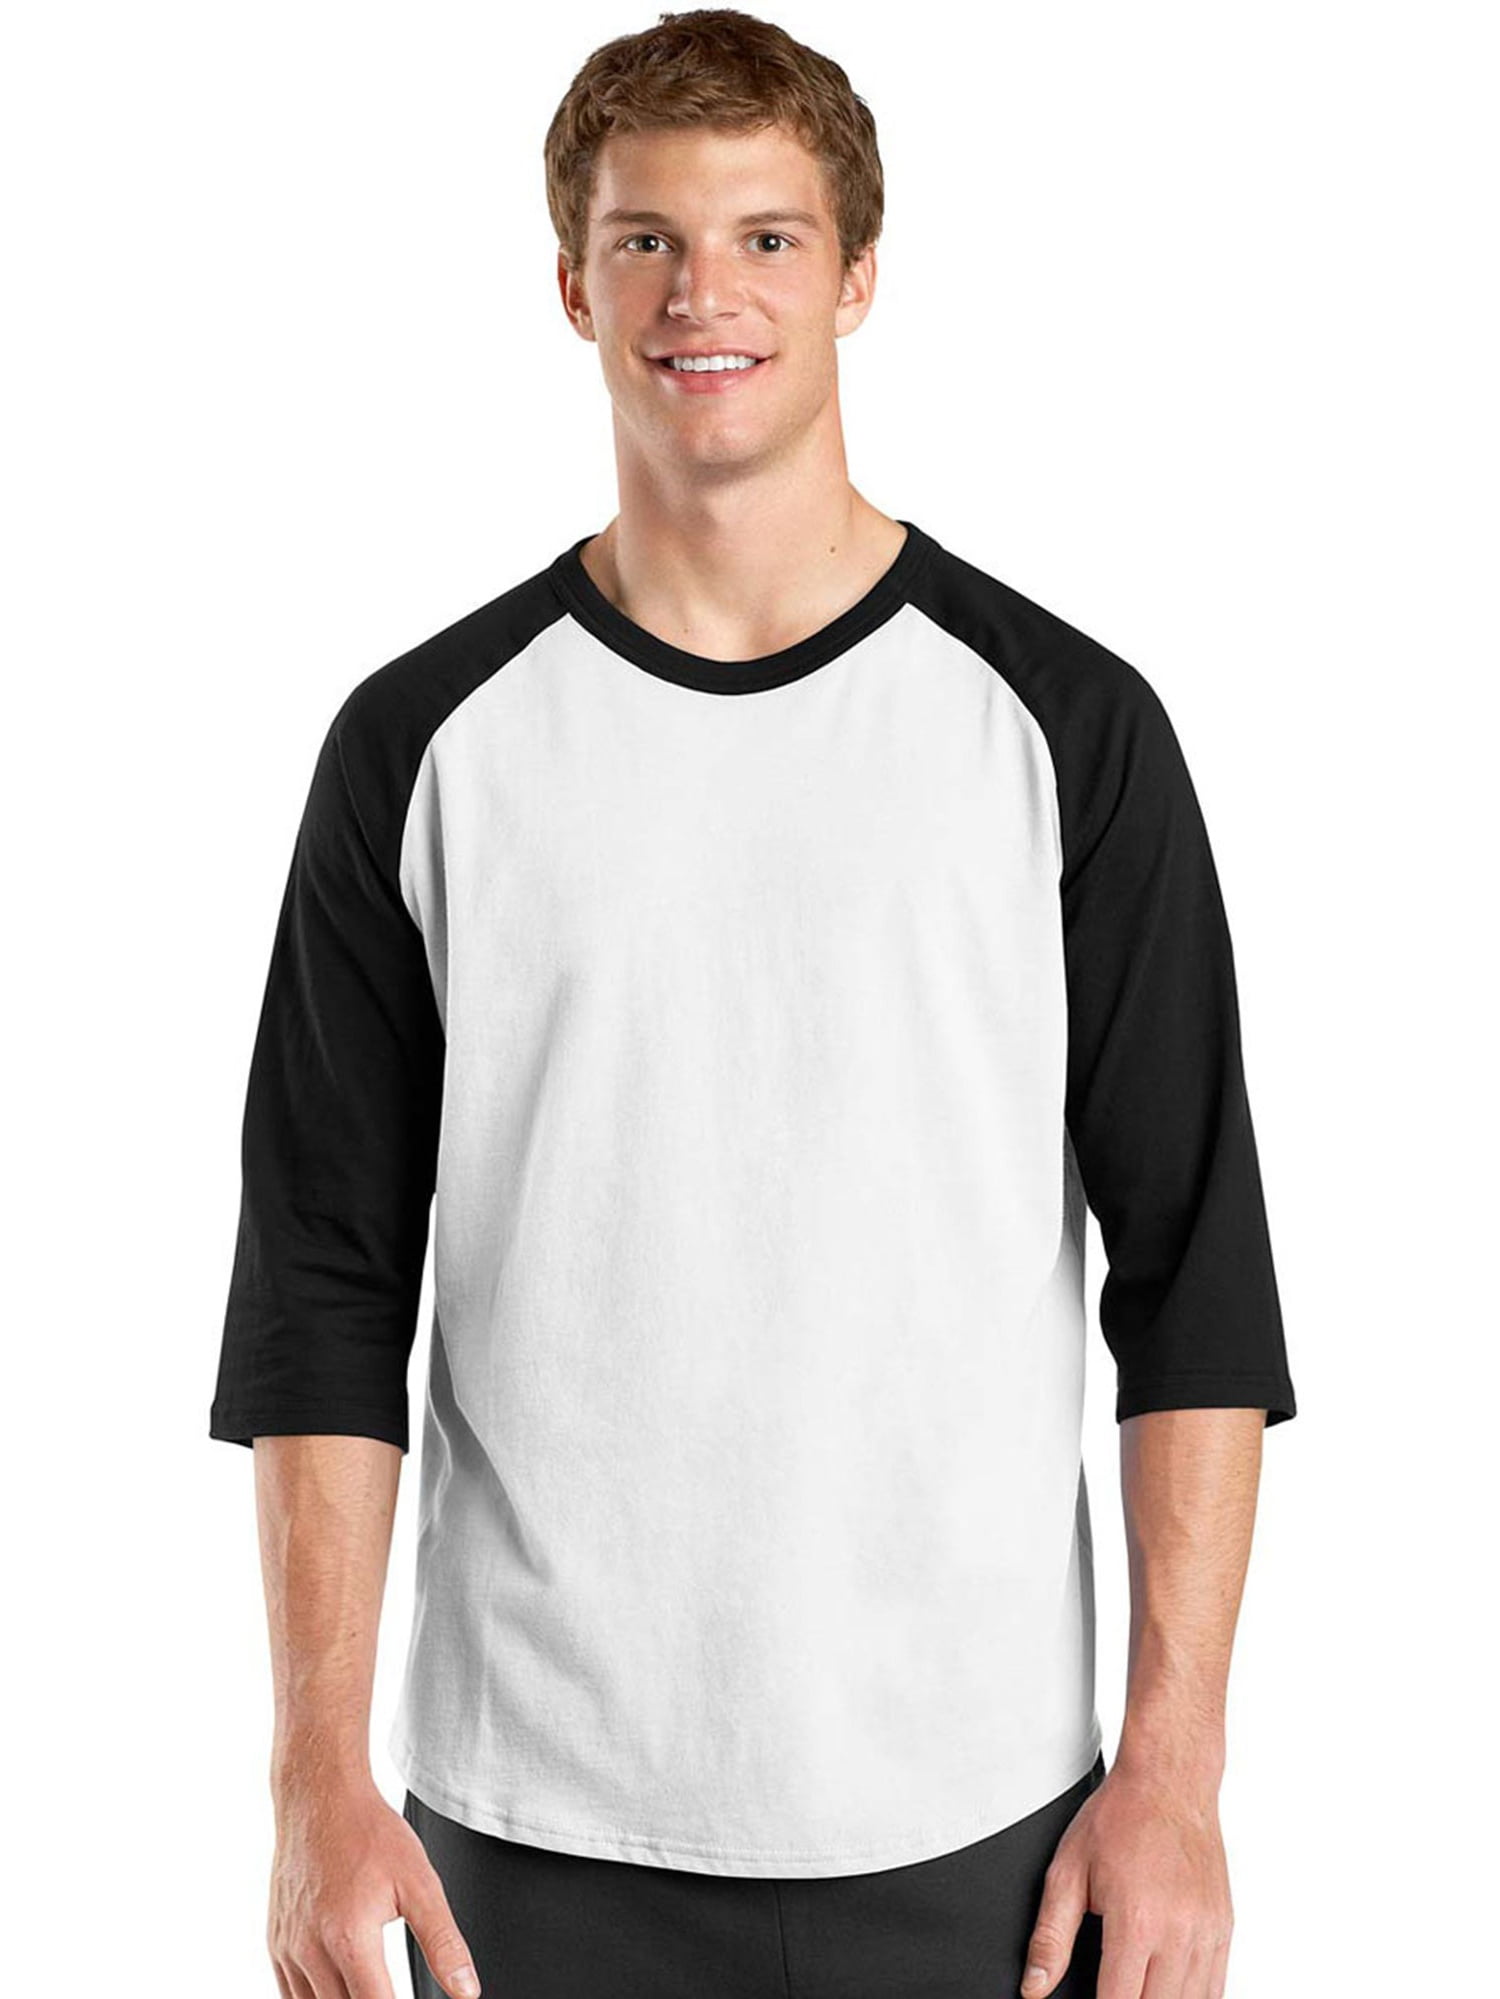 Sport-Tek Men's 3/4 Raglan Sleeves Colorblock Jersey - Walmart.com